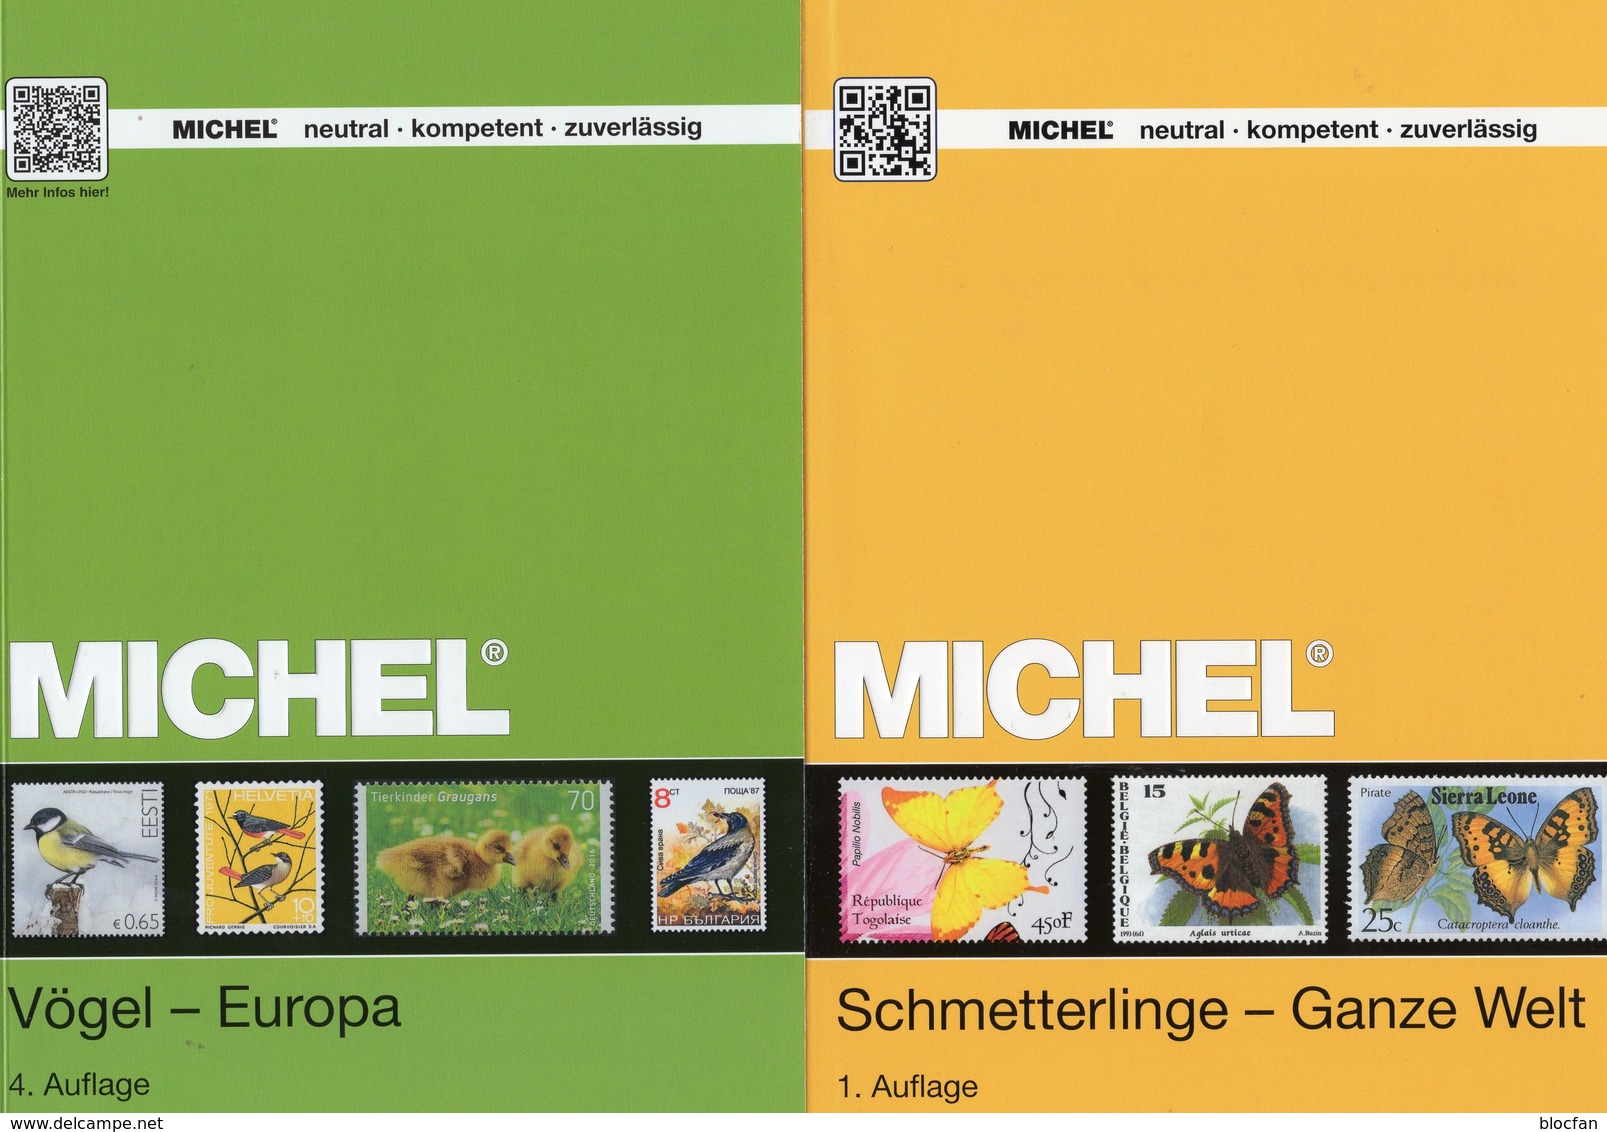 2 MlCHEL Kataloge Schmetterlinge+Vögel 2017 Briefmarken New 134€ WWF Fauna Stamps Bird/butterfly Catalogue Of Topic - Topics